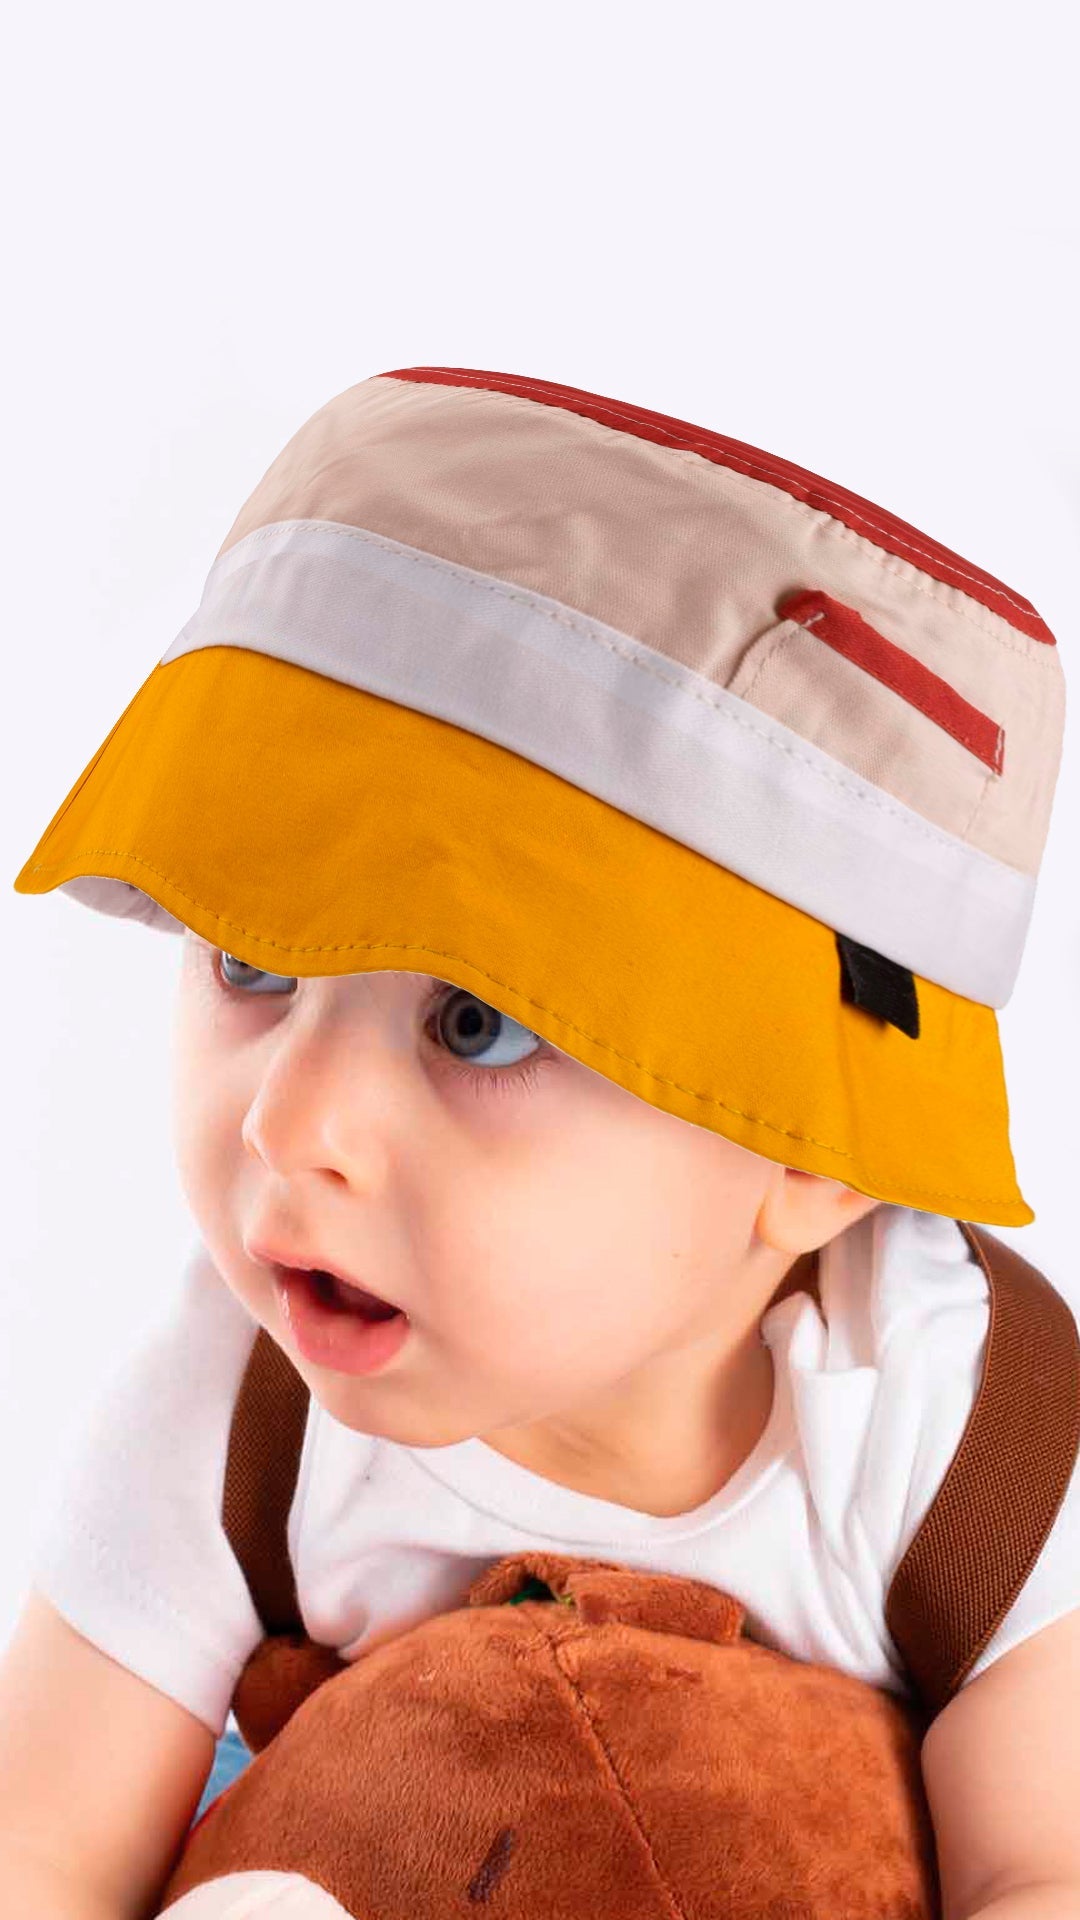 Wide Brim -Baby Fotr Hat 1-3 Years